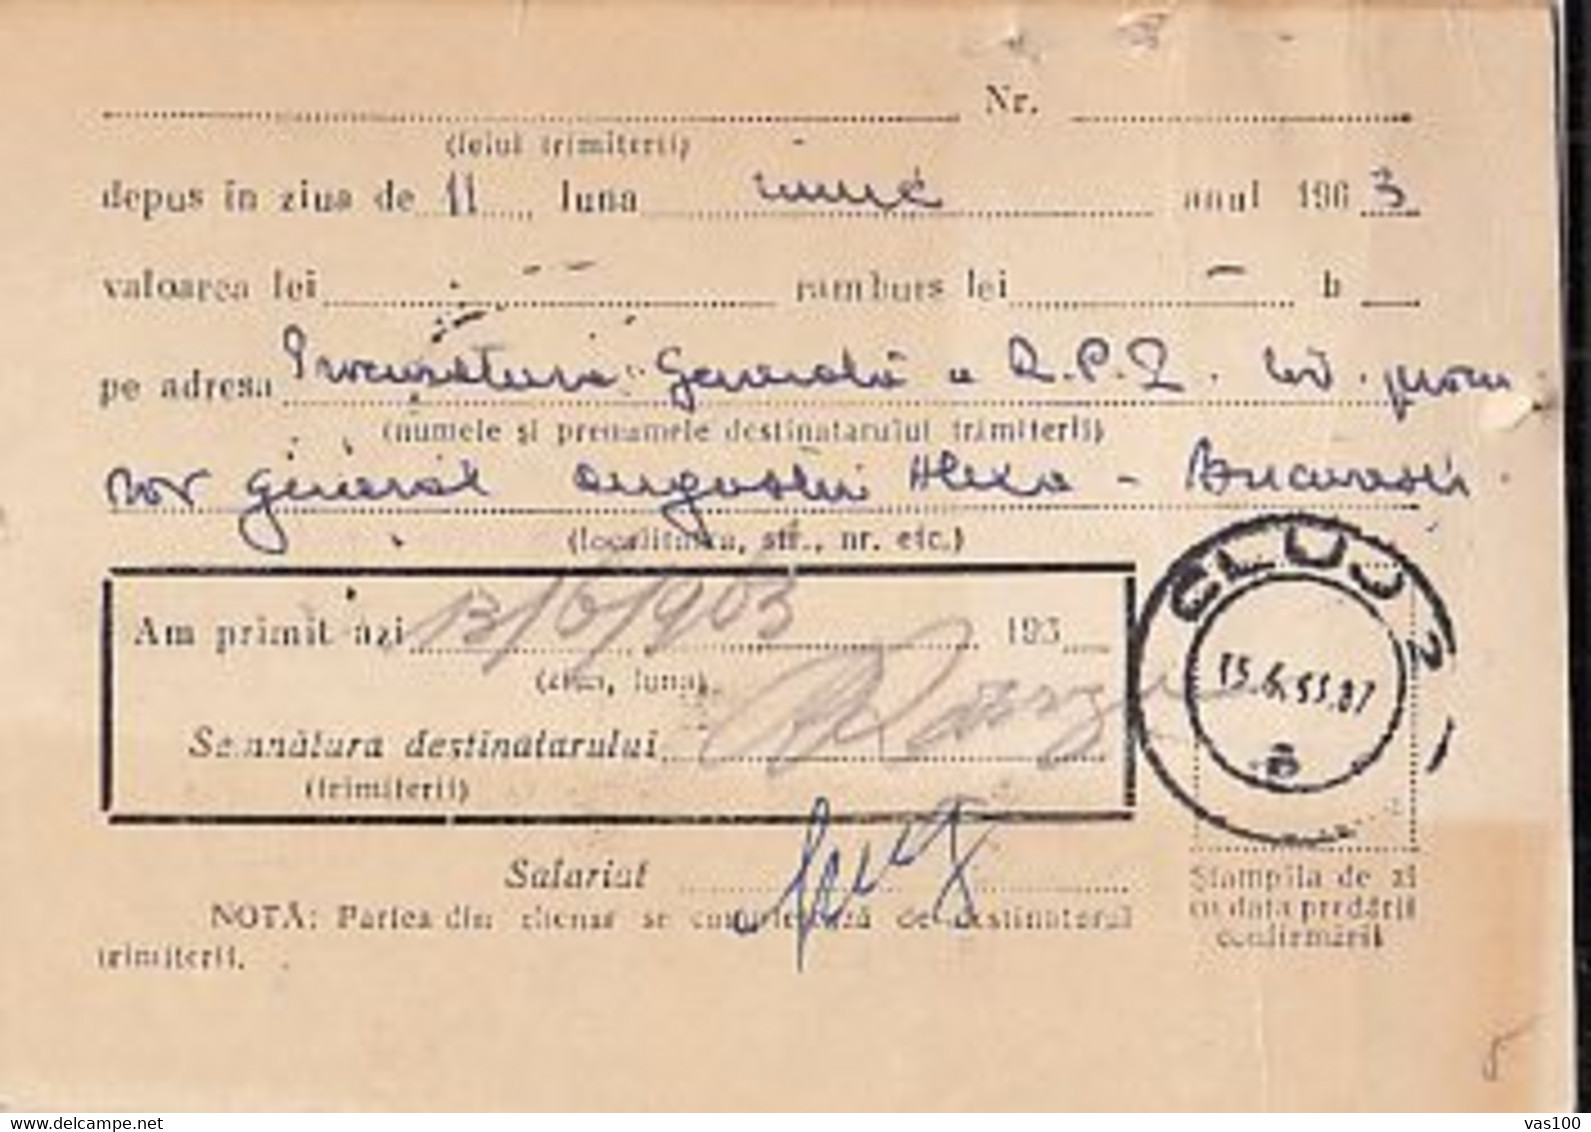 PARCEL RECEIPT CONFIRMATION, 1963, ROMANIA - Colis Postaux